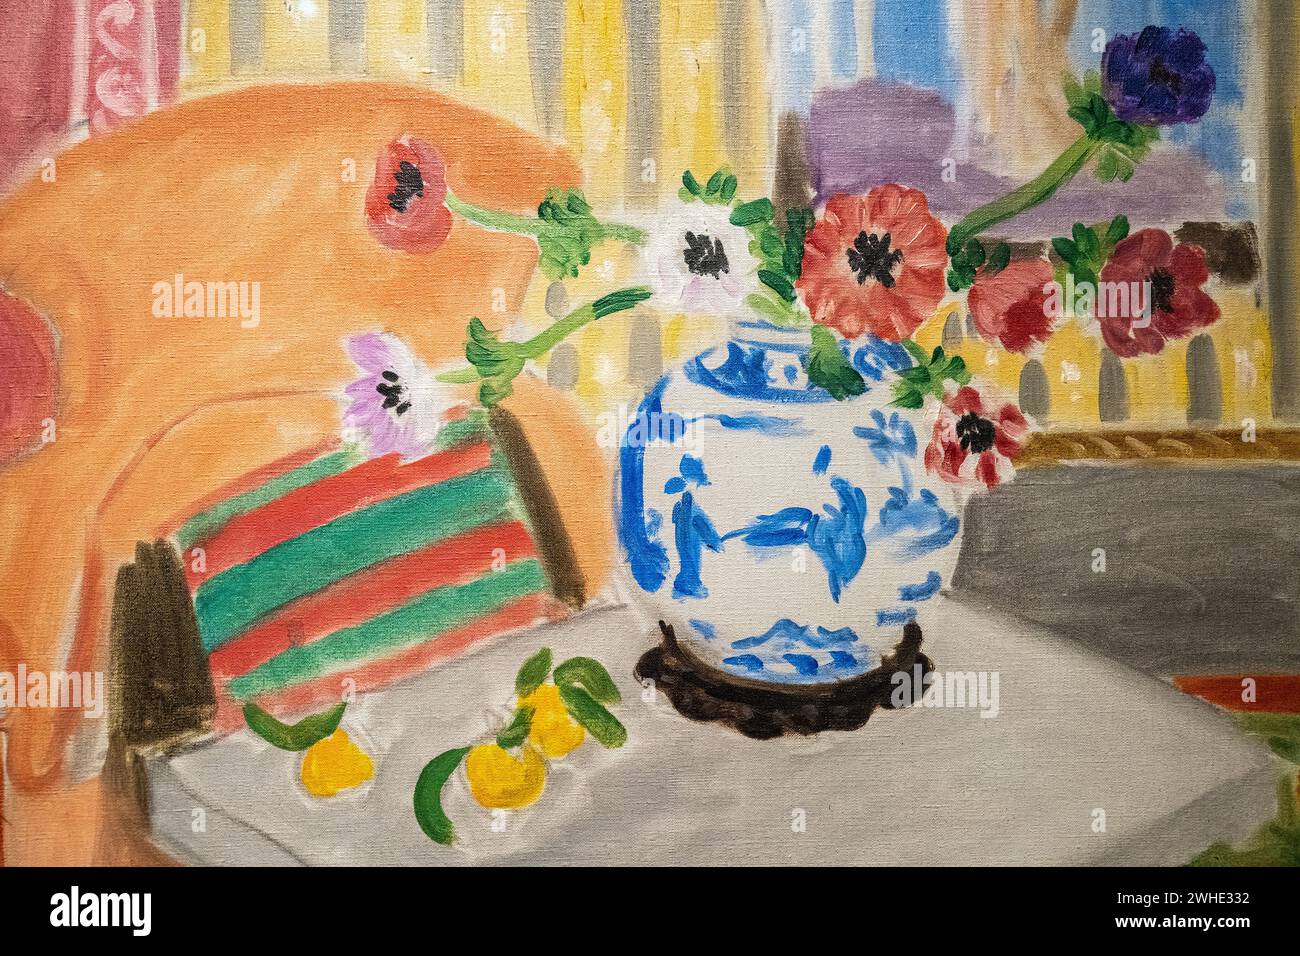 Une partie de la peinture à l'huile sur toile d'Henri Matisse de 1922 « anémones et vase chinois » au Musée d'Art de Baltimore Banque D'Images